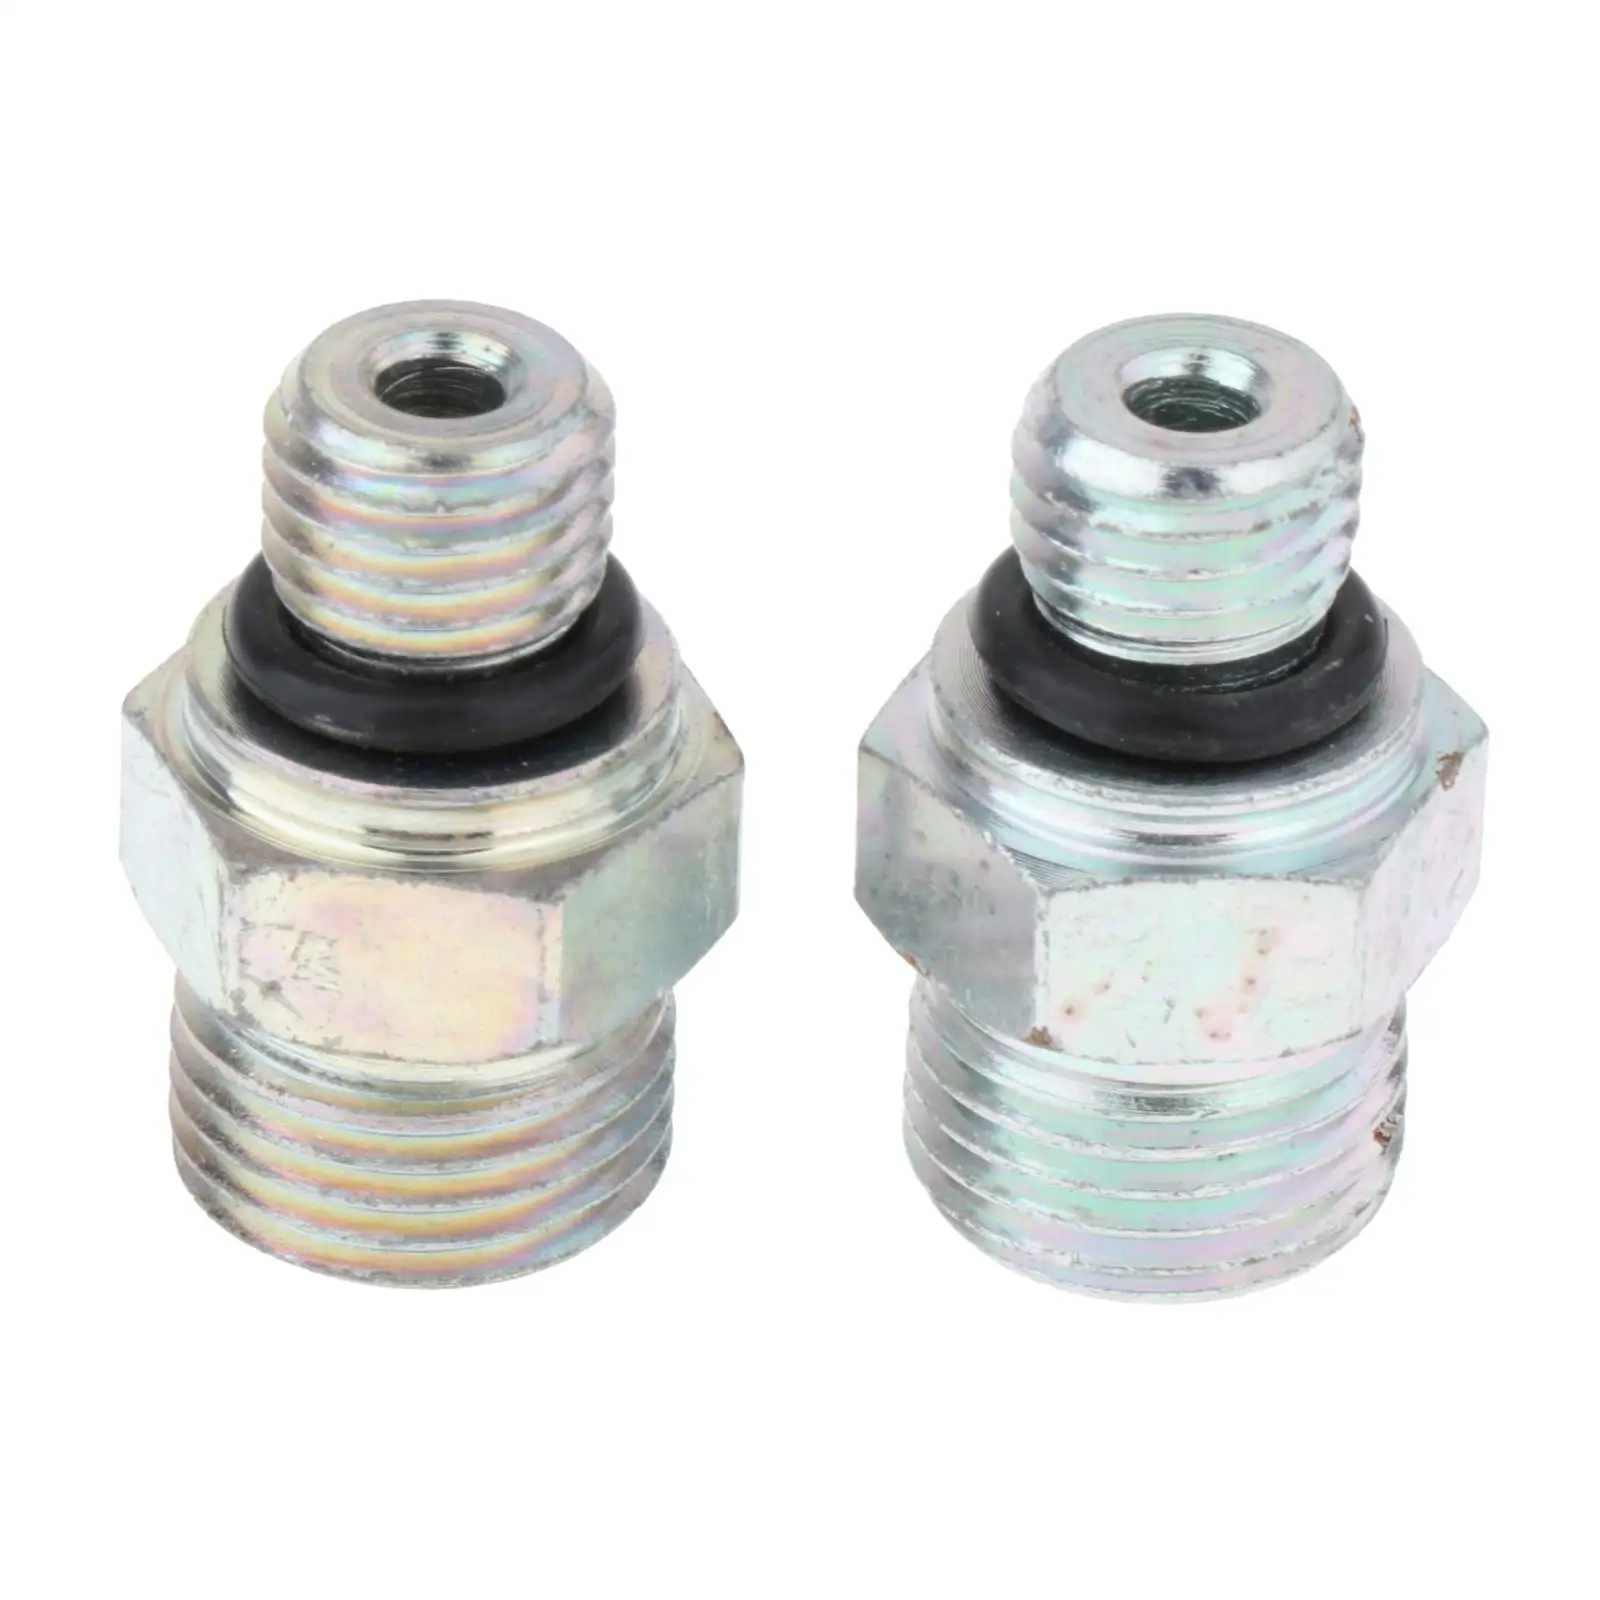 2x Connectors Joints replace for Auto Parts Automotive Engine Parts